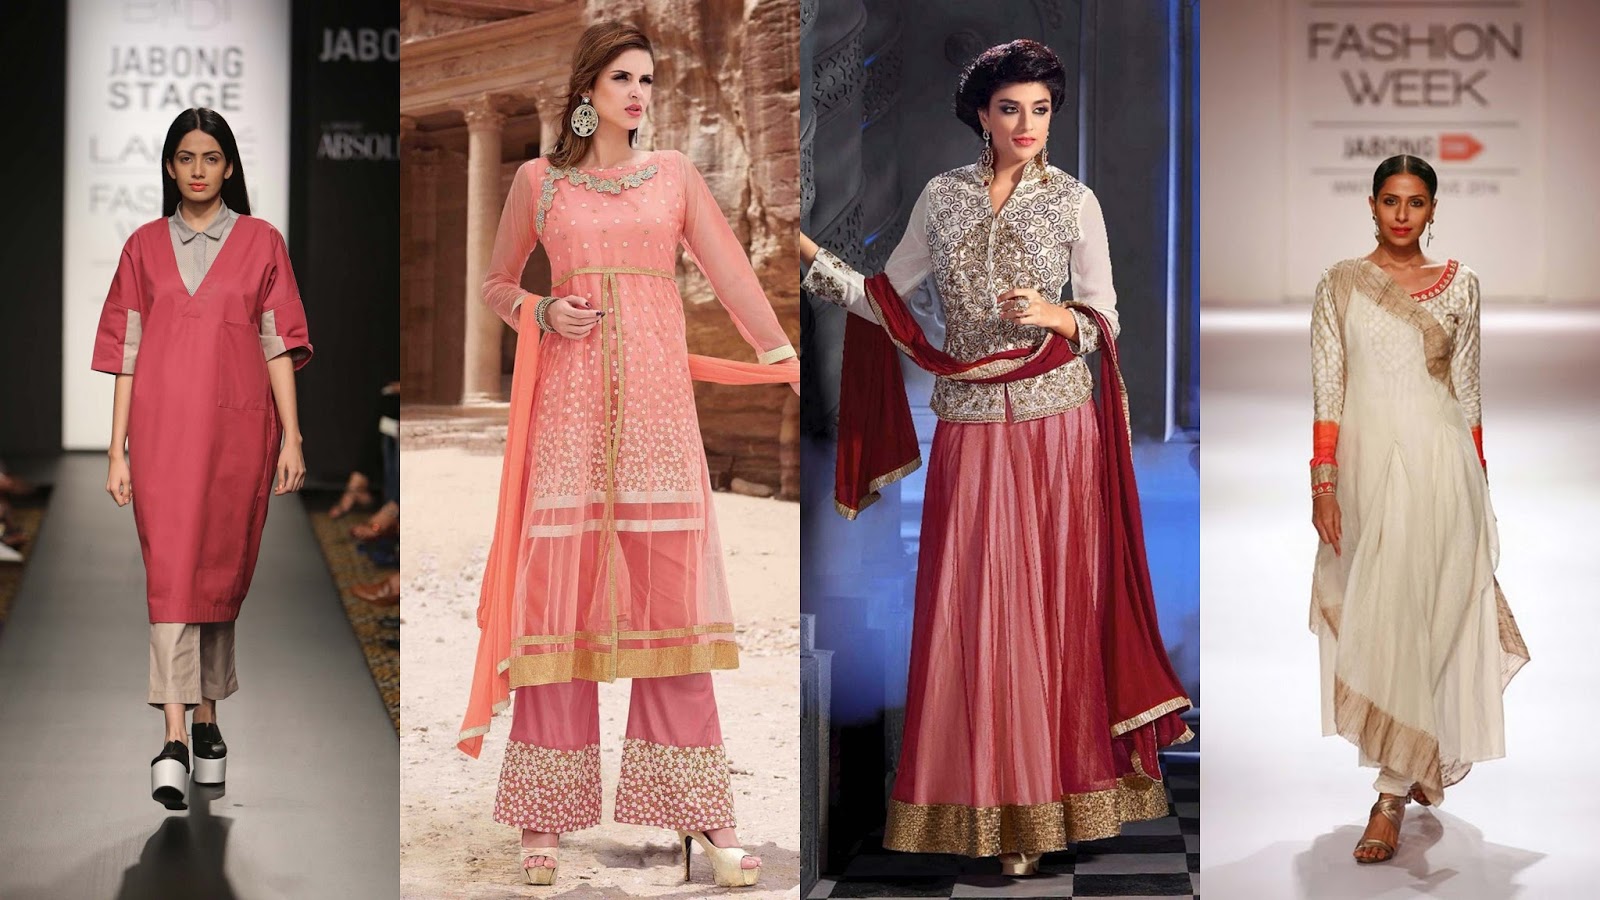 Fashion design trends in India